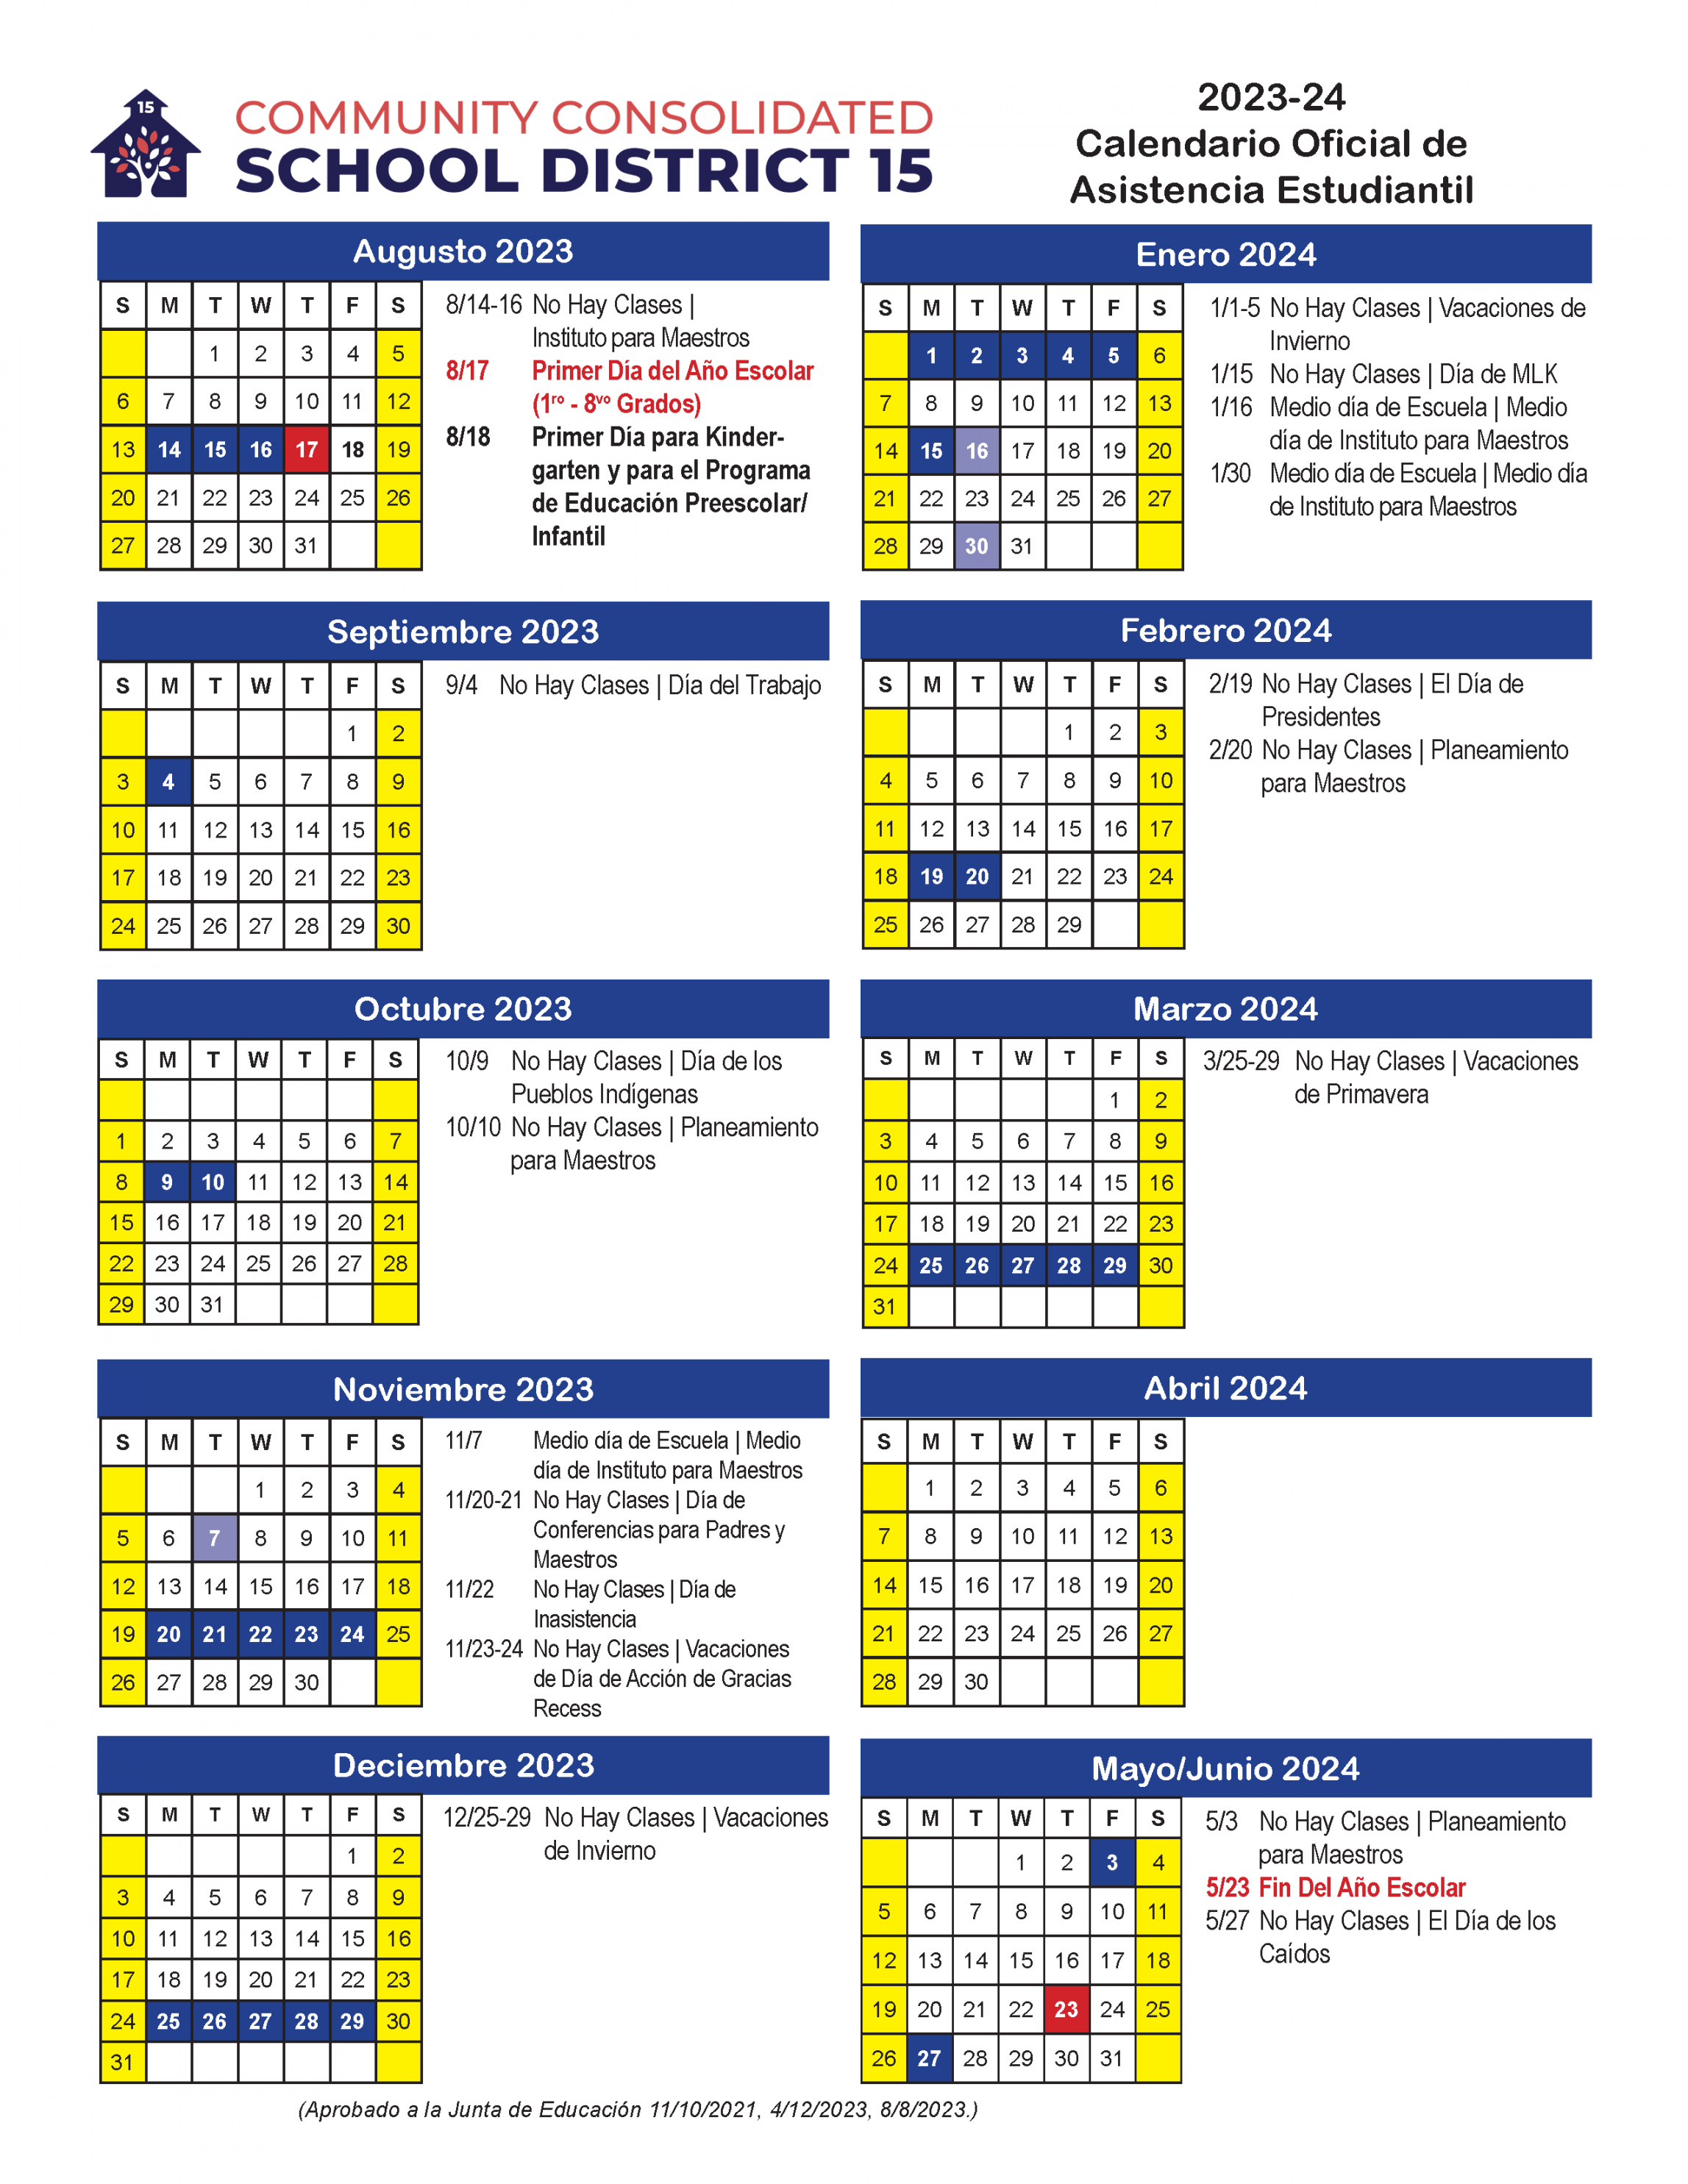 Calendars / - Official School Calendar